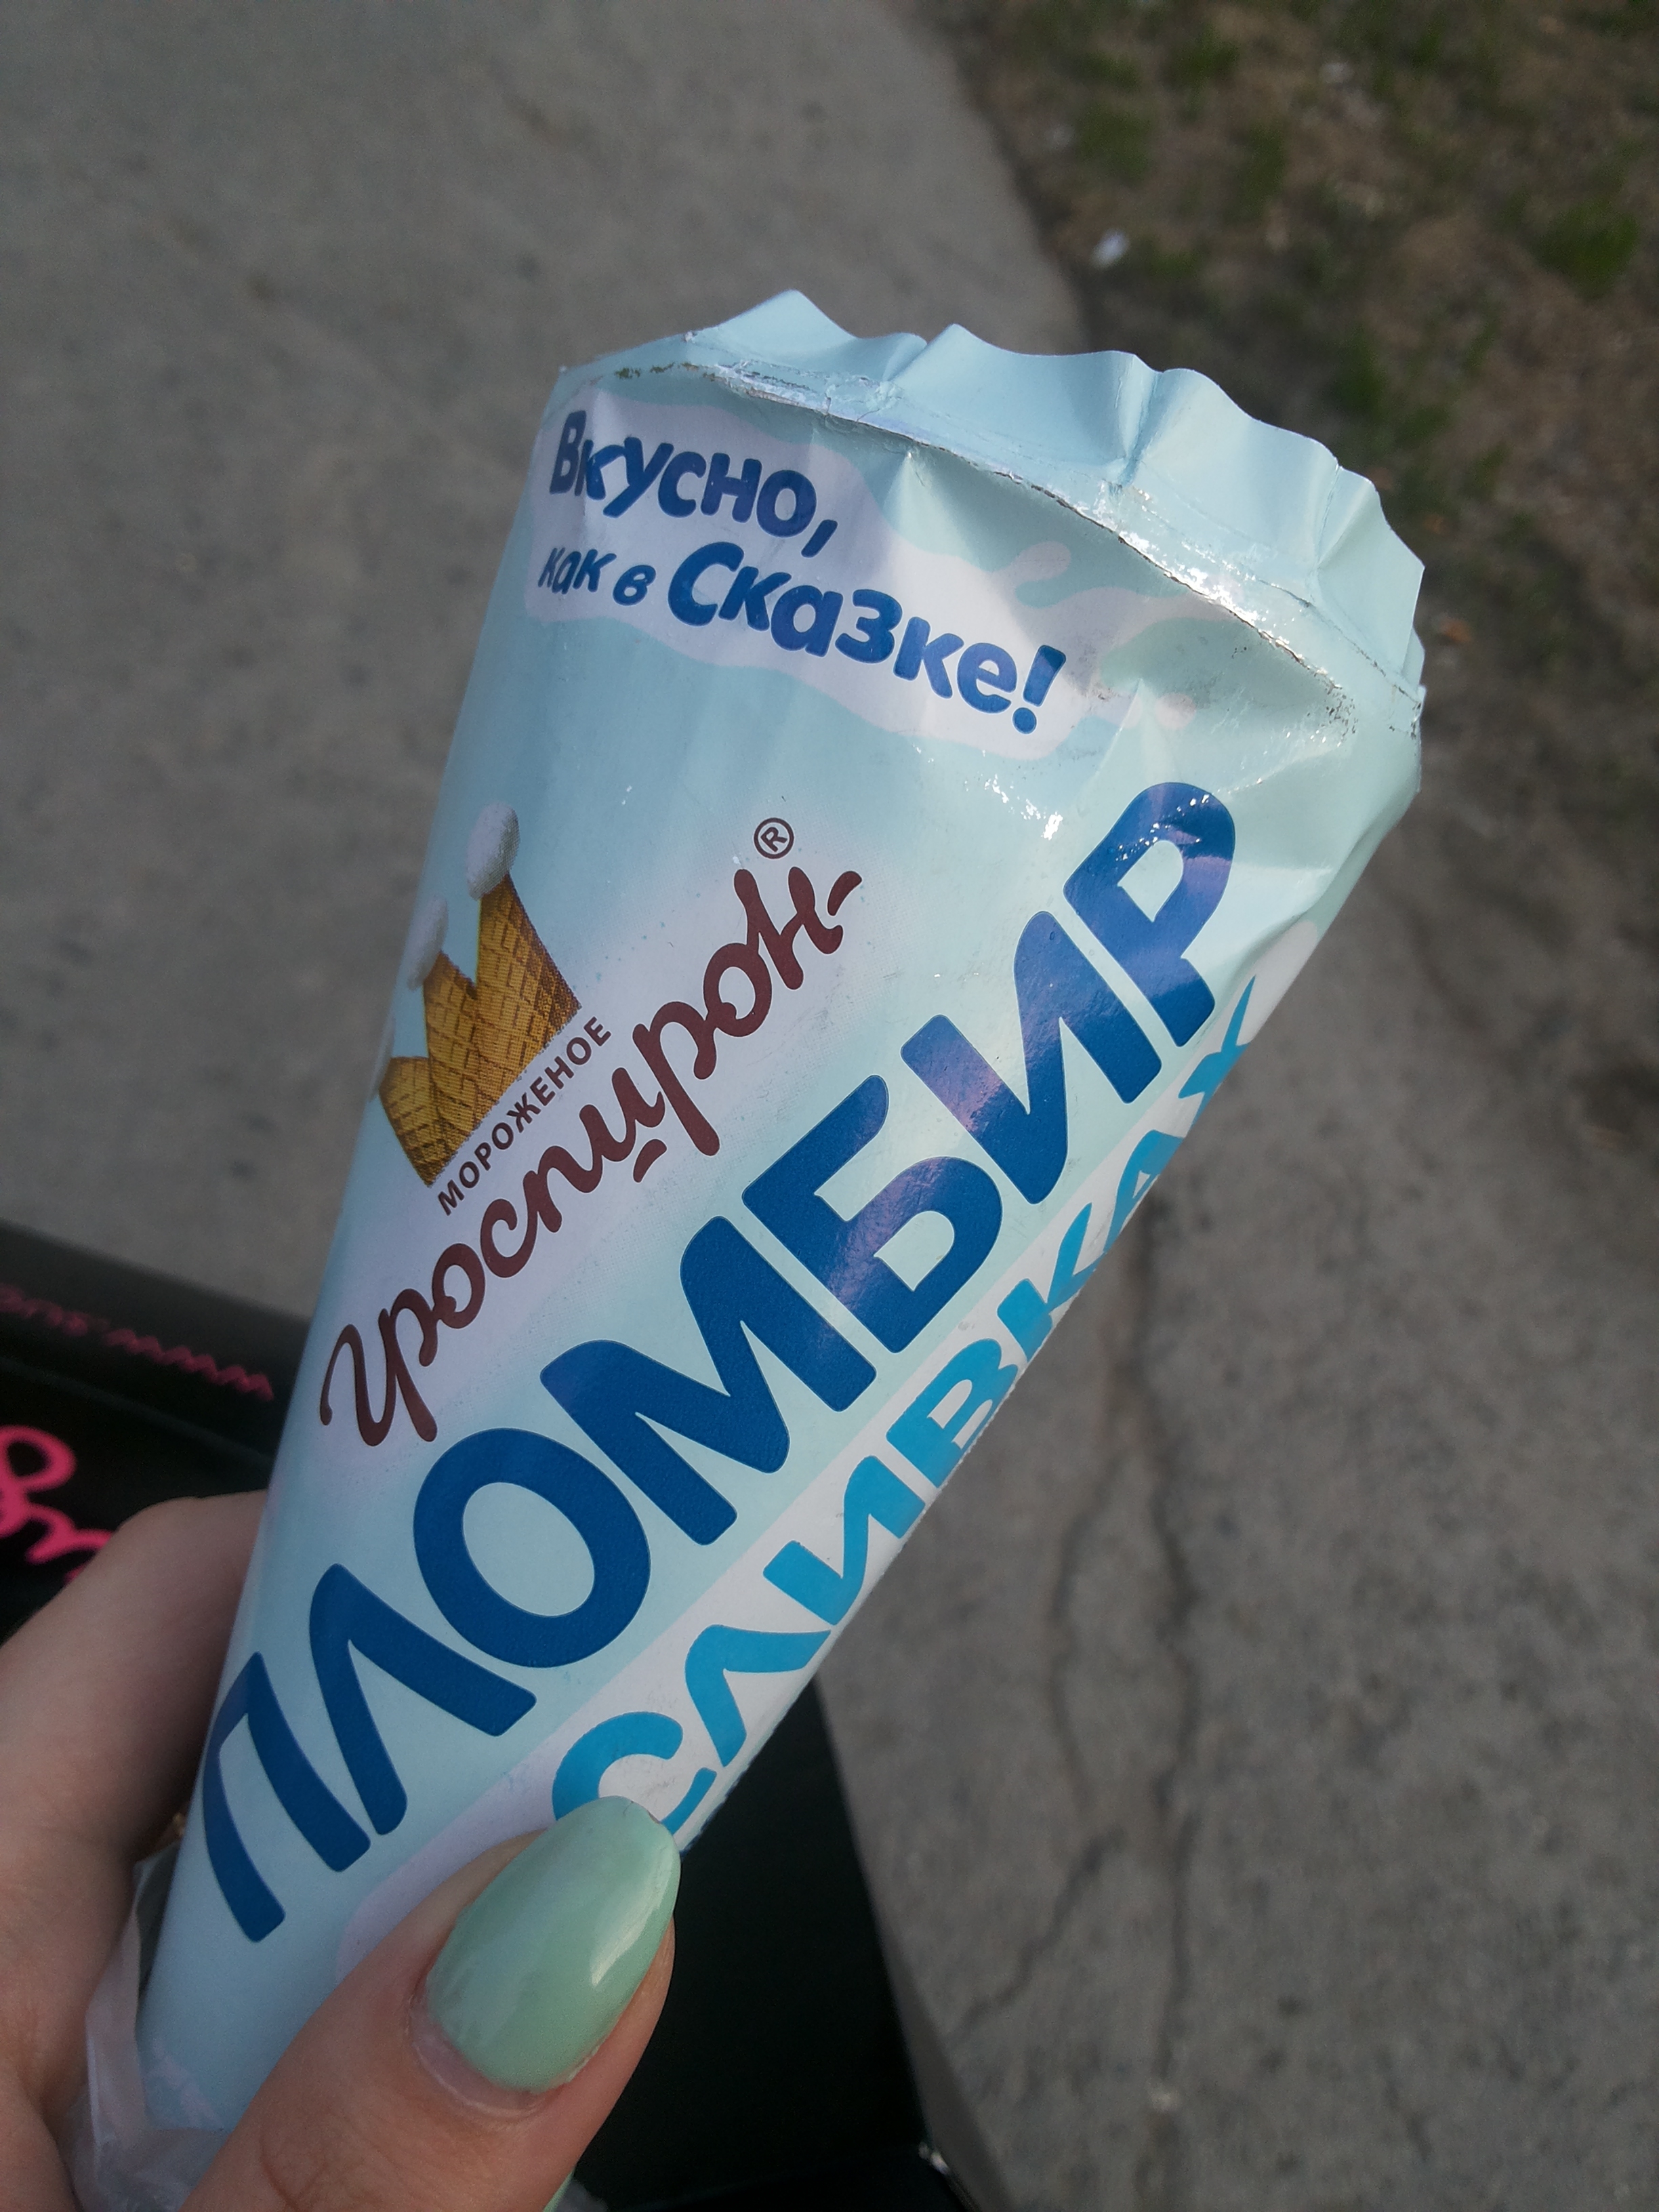 Где В Новосибирске Можно Купить Мороженое 18